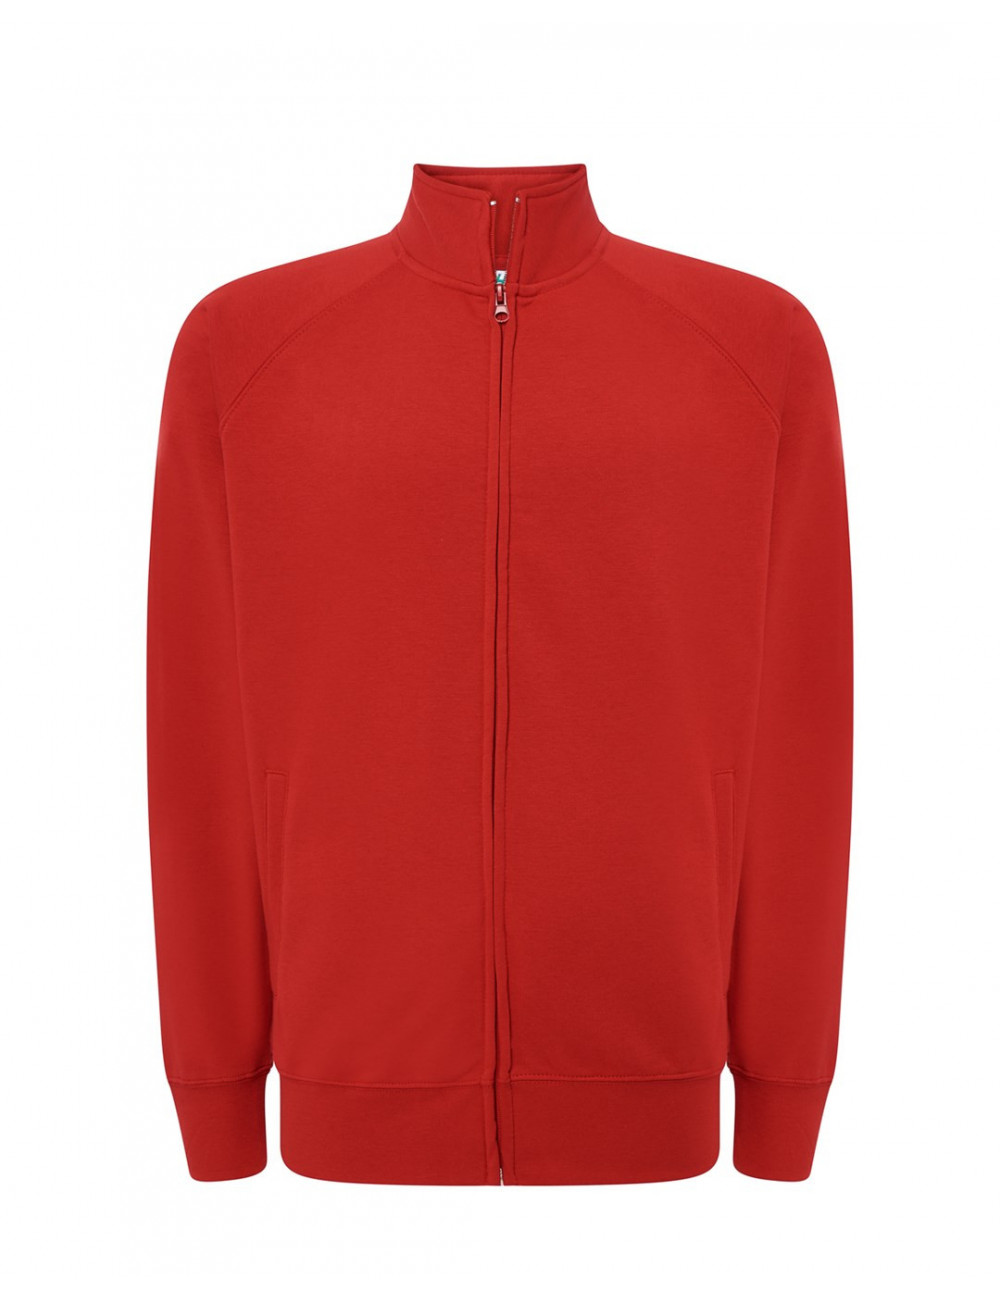 Herren-Sweatshirt mit durchgehendem Reißverschluss, rot, JHK